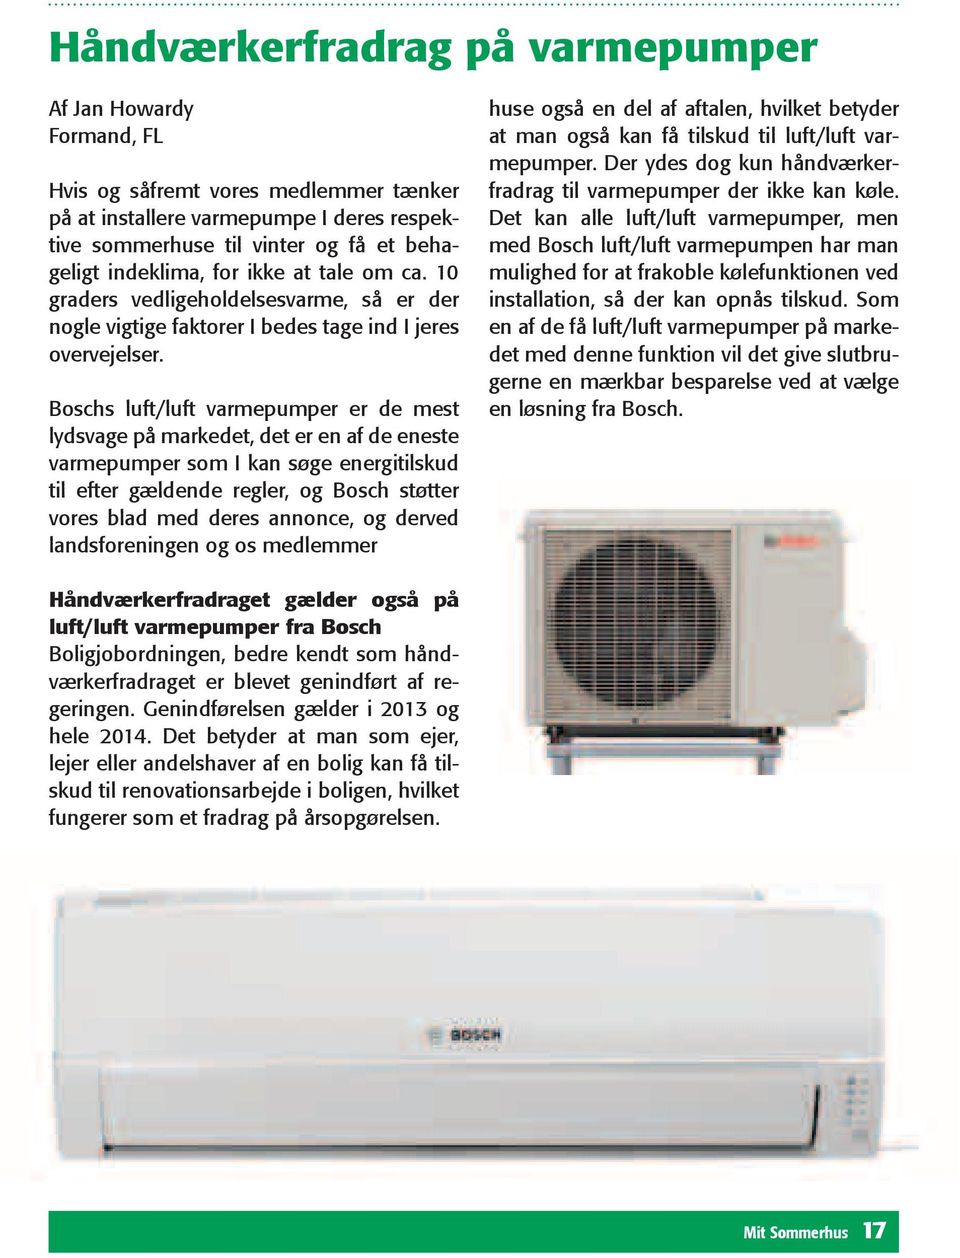 Boschs luft/luft varmepumper er de mest lydsvage på markedet, det er en af de eneste varmepumper som I kan søge energitilskud til efter gældende regler, og Bosch støtter vores blad med deres annonce,